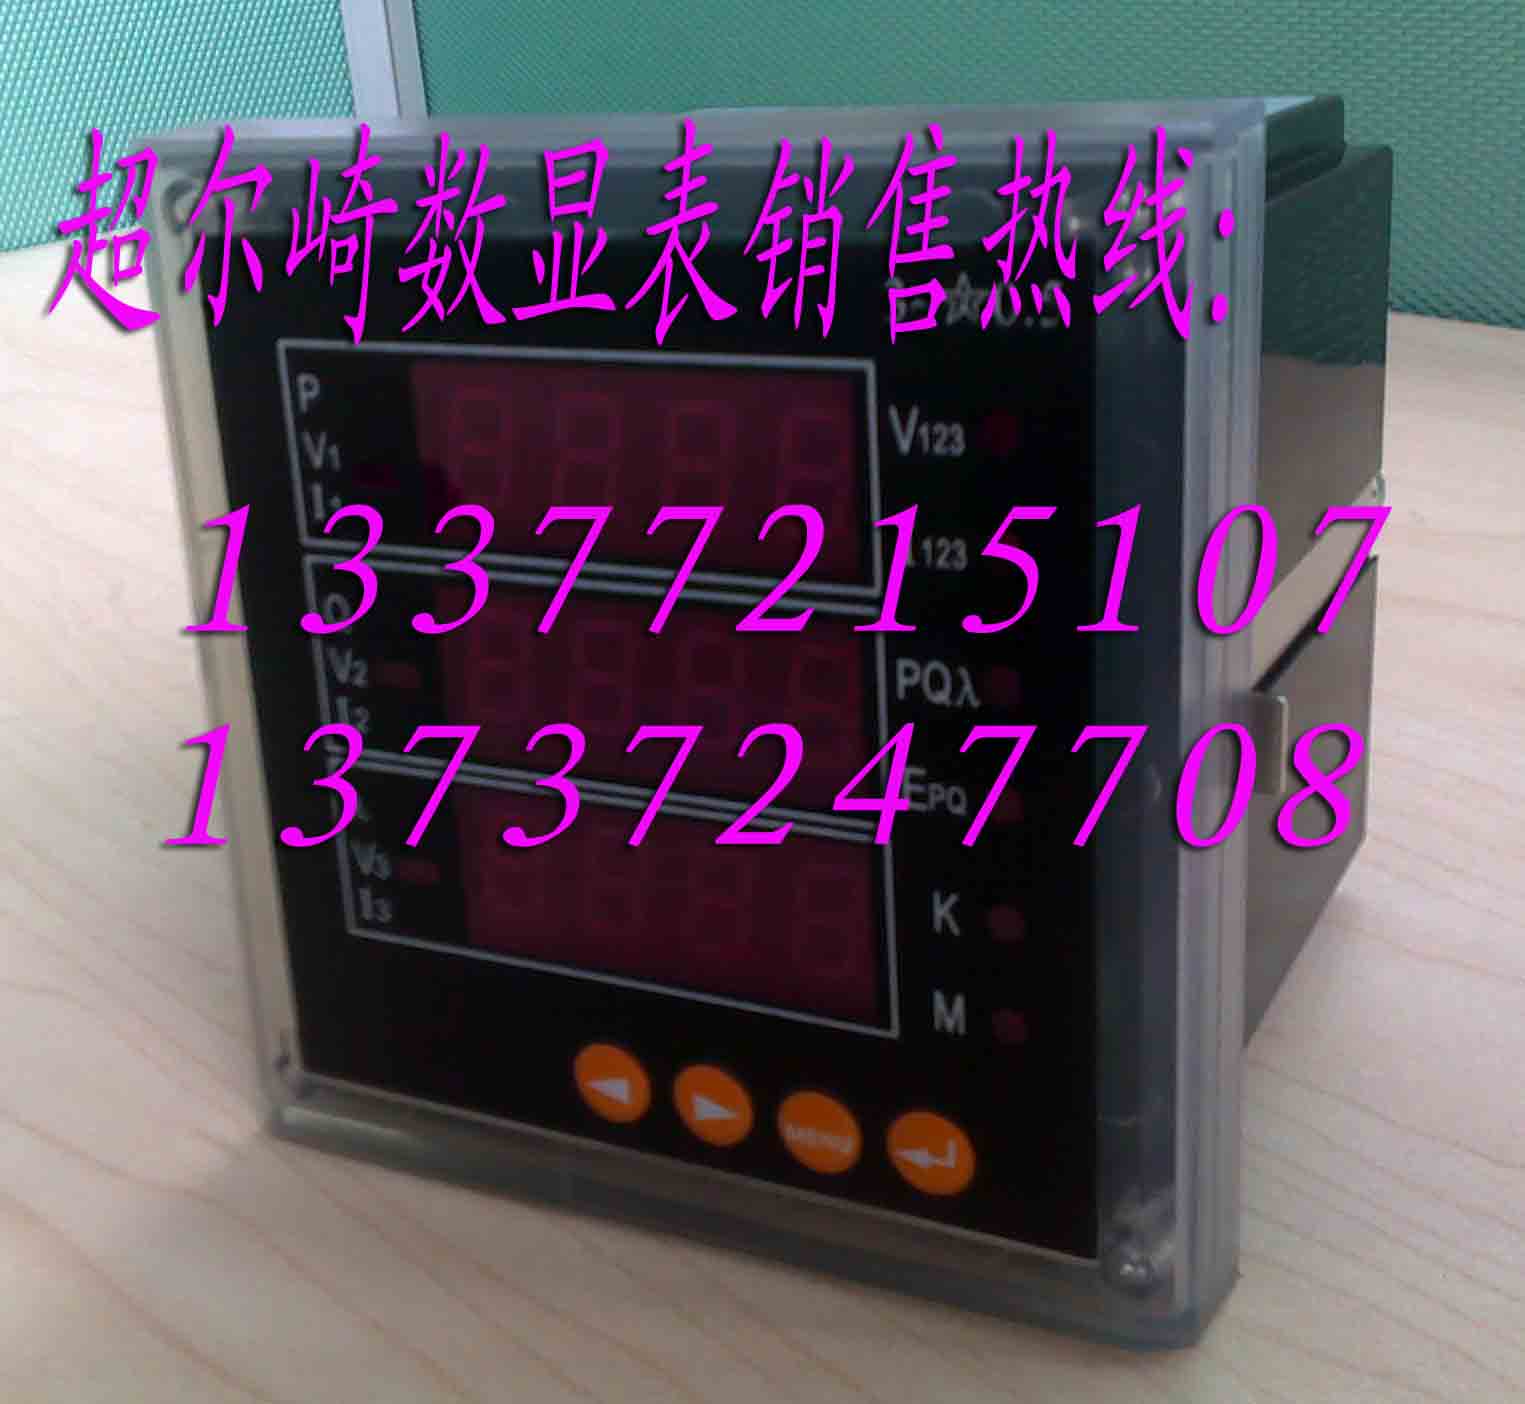 CEQ 超尔崎电流表CD194I-1X1有货 产品 公司